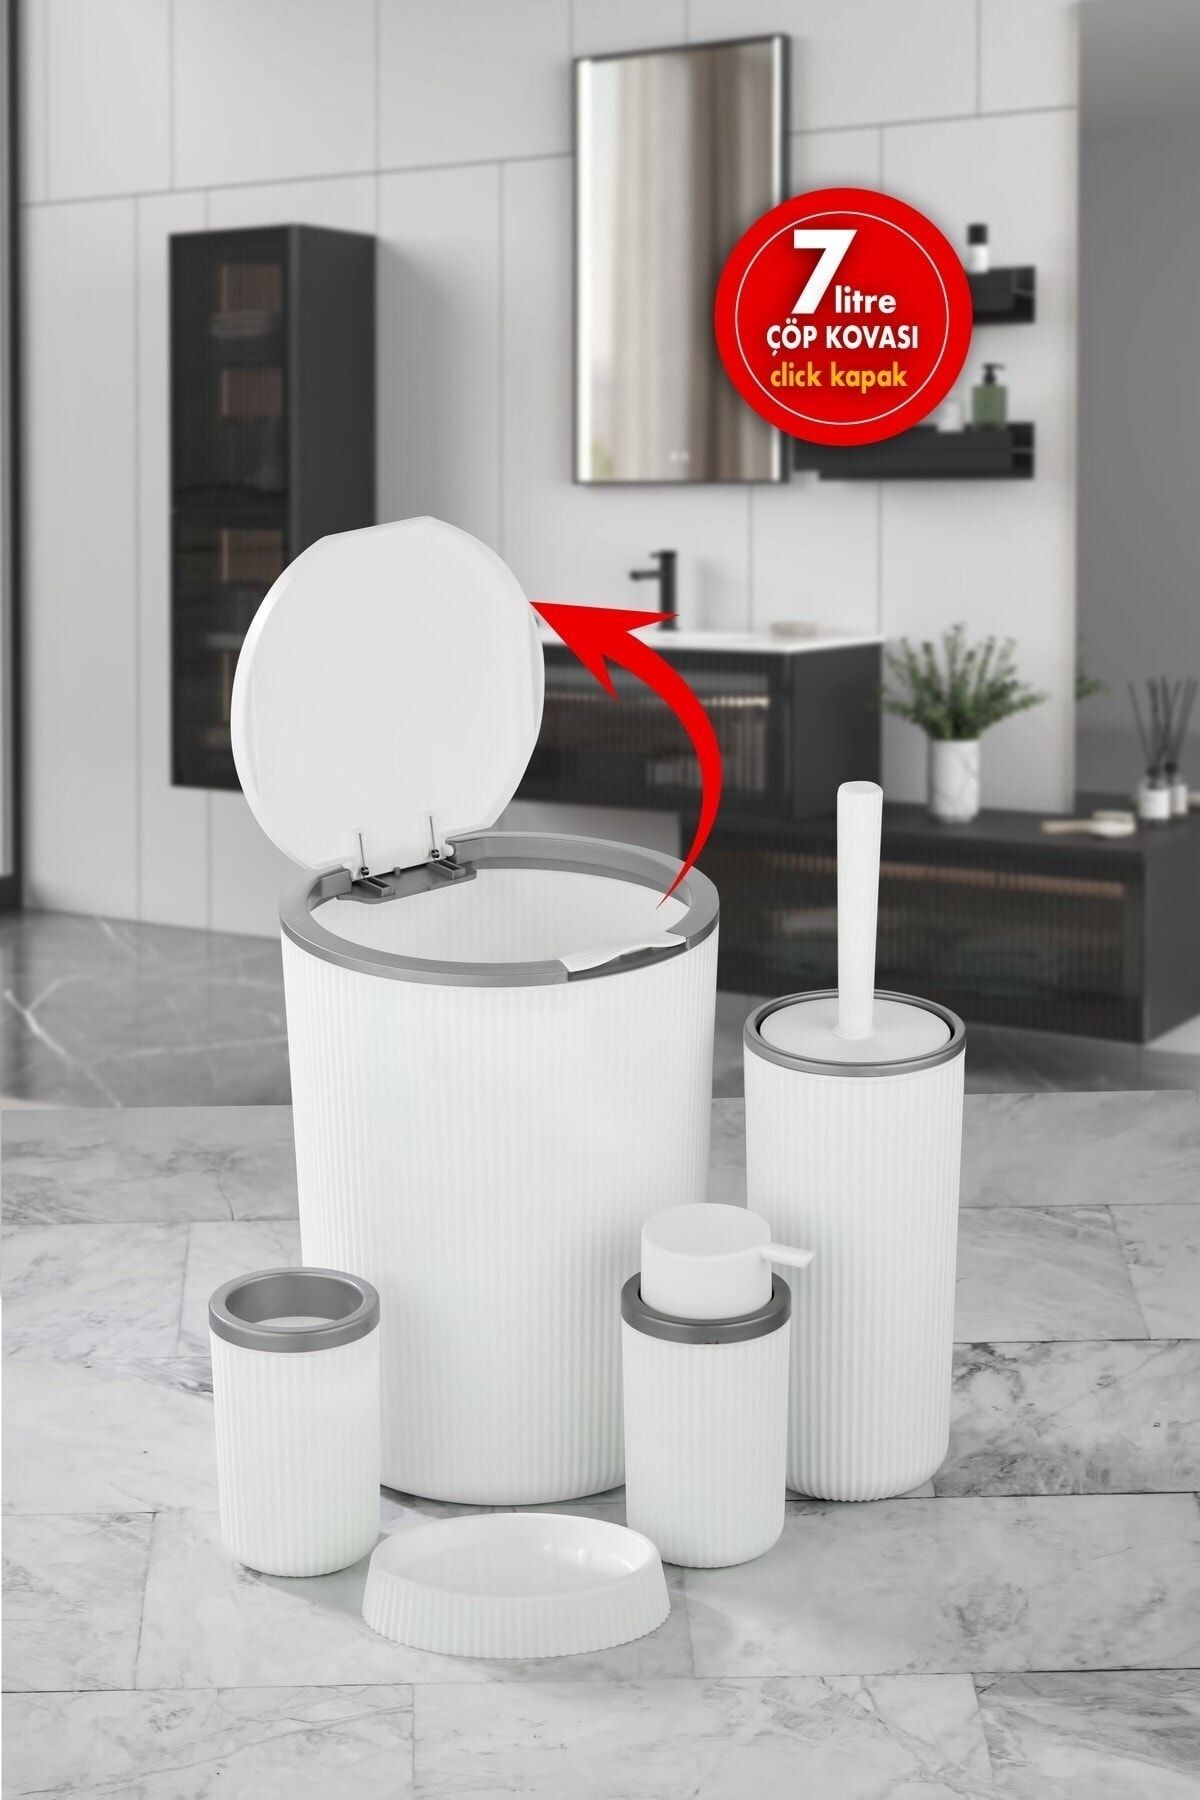 Sas Haus Çöp Kovası Tuvalet Fırçası Sıvı Sabunluk 5 Parça Banyo Seti 7 Litre Beyaz Gri